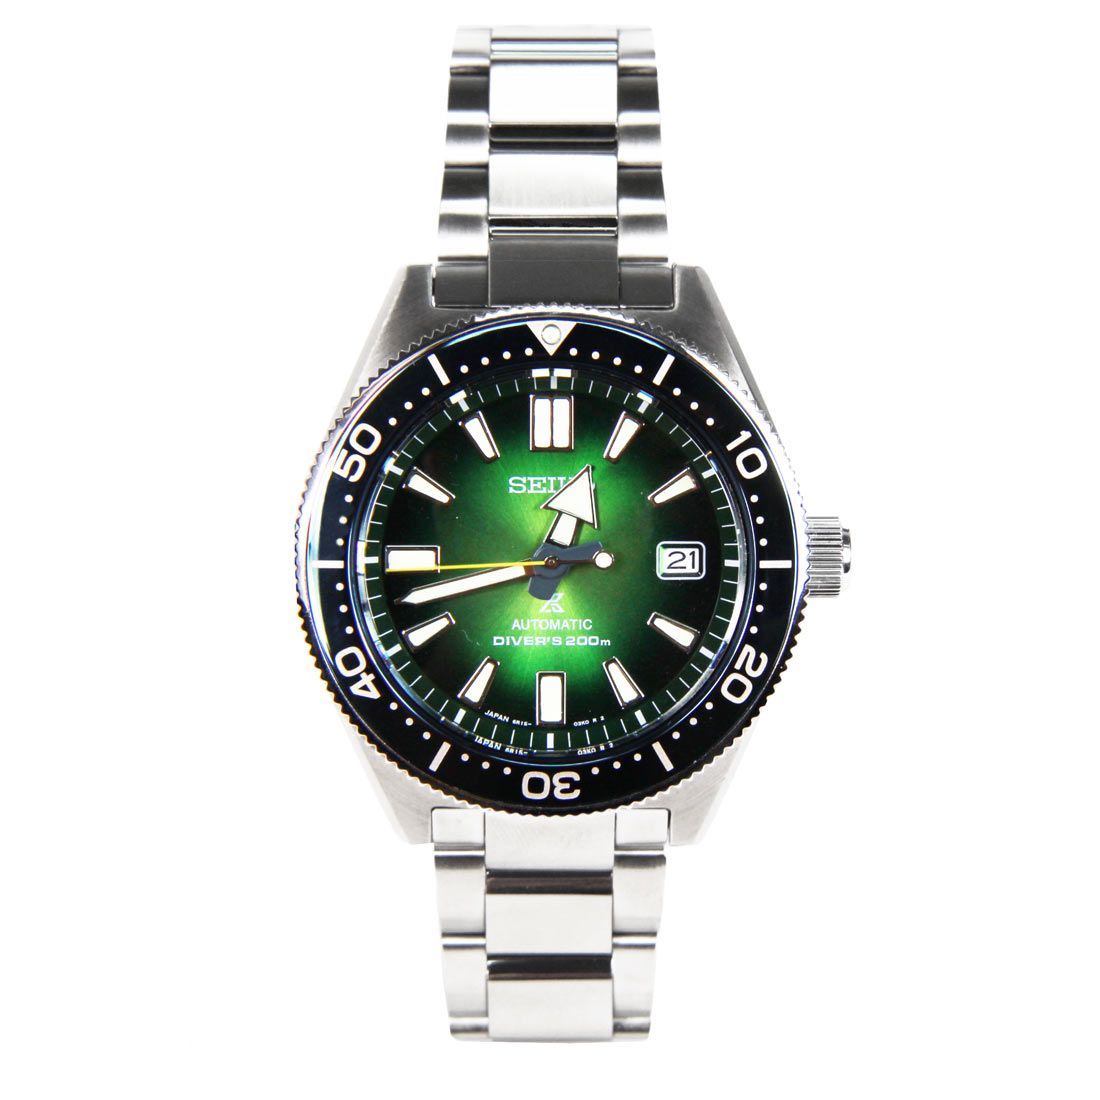 Seiko Prospex Automatic Green Dial JDM Watch SBDC077 -Seiko